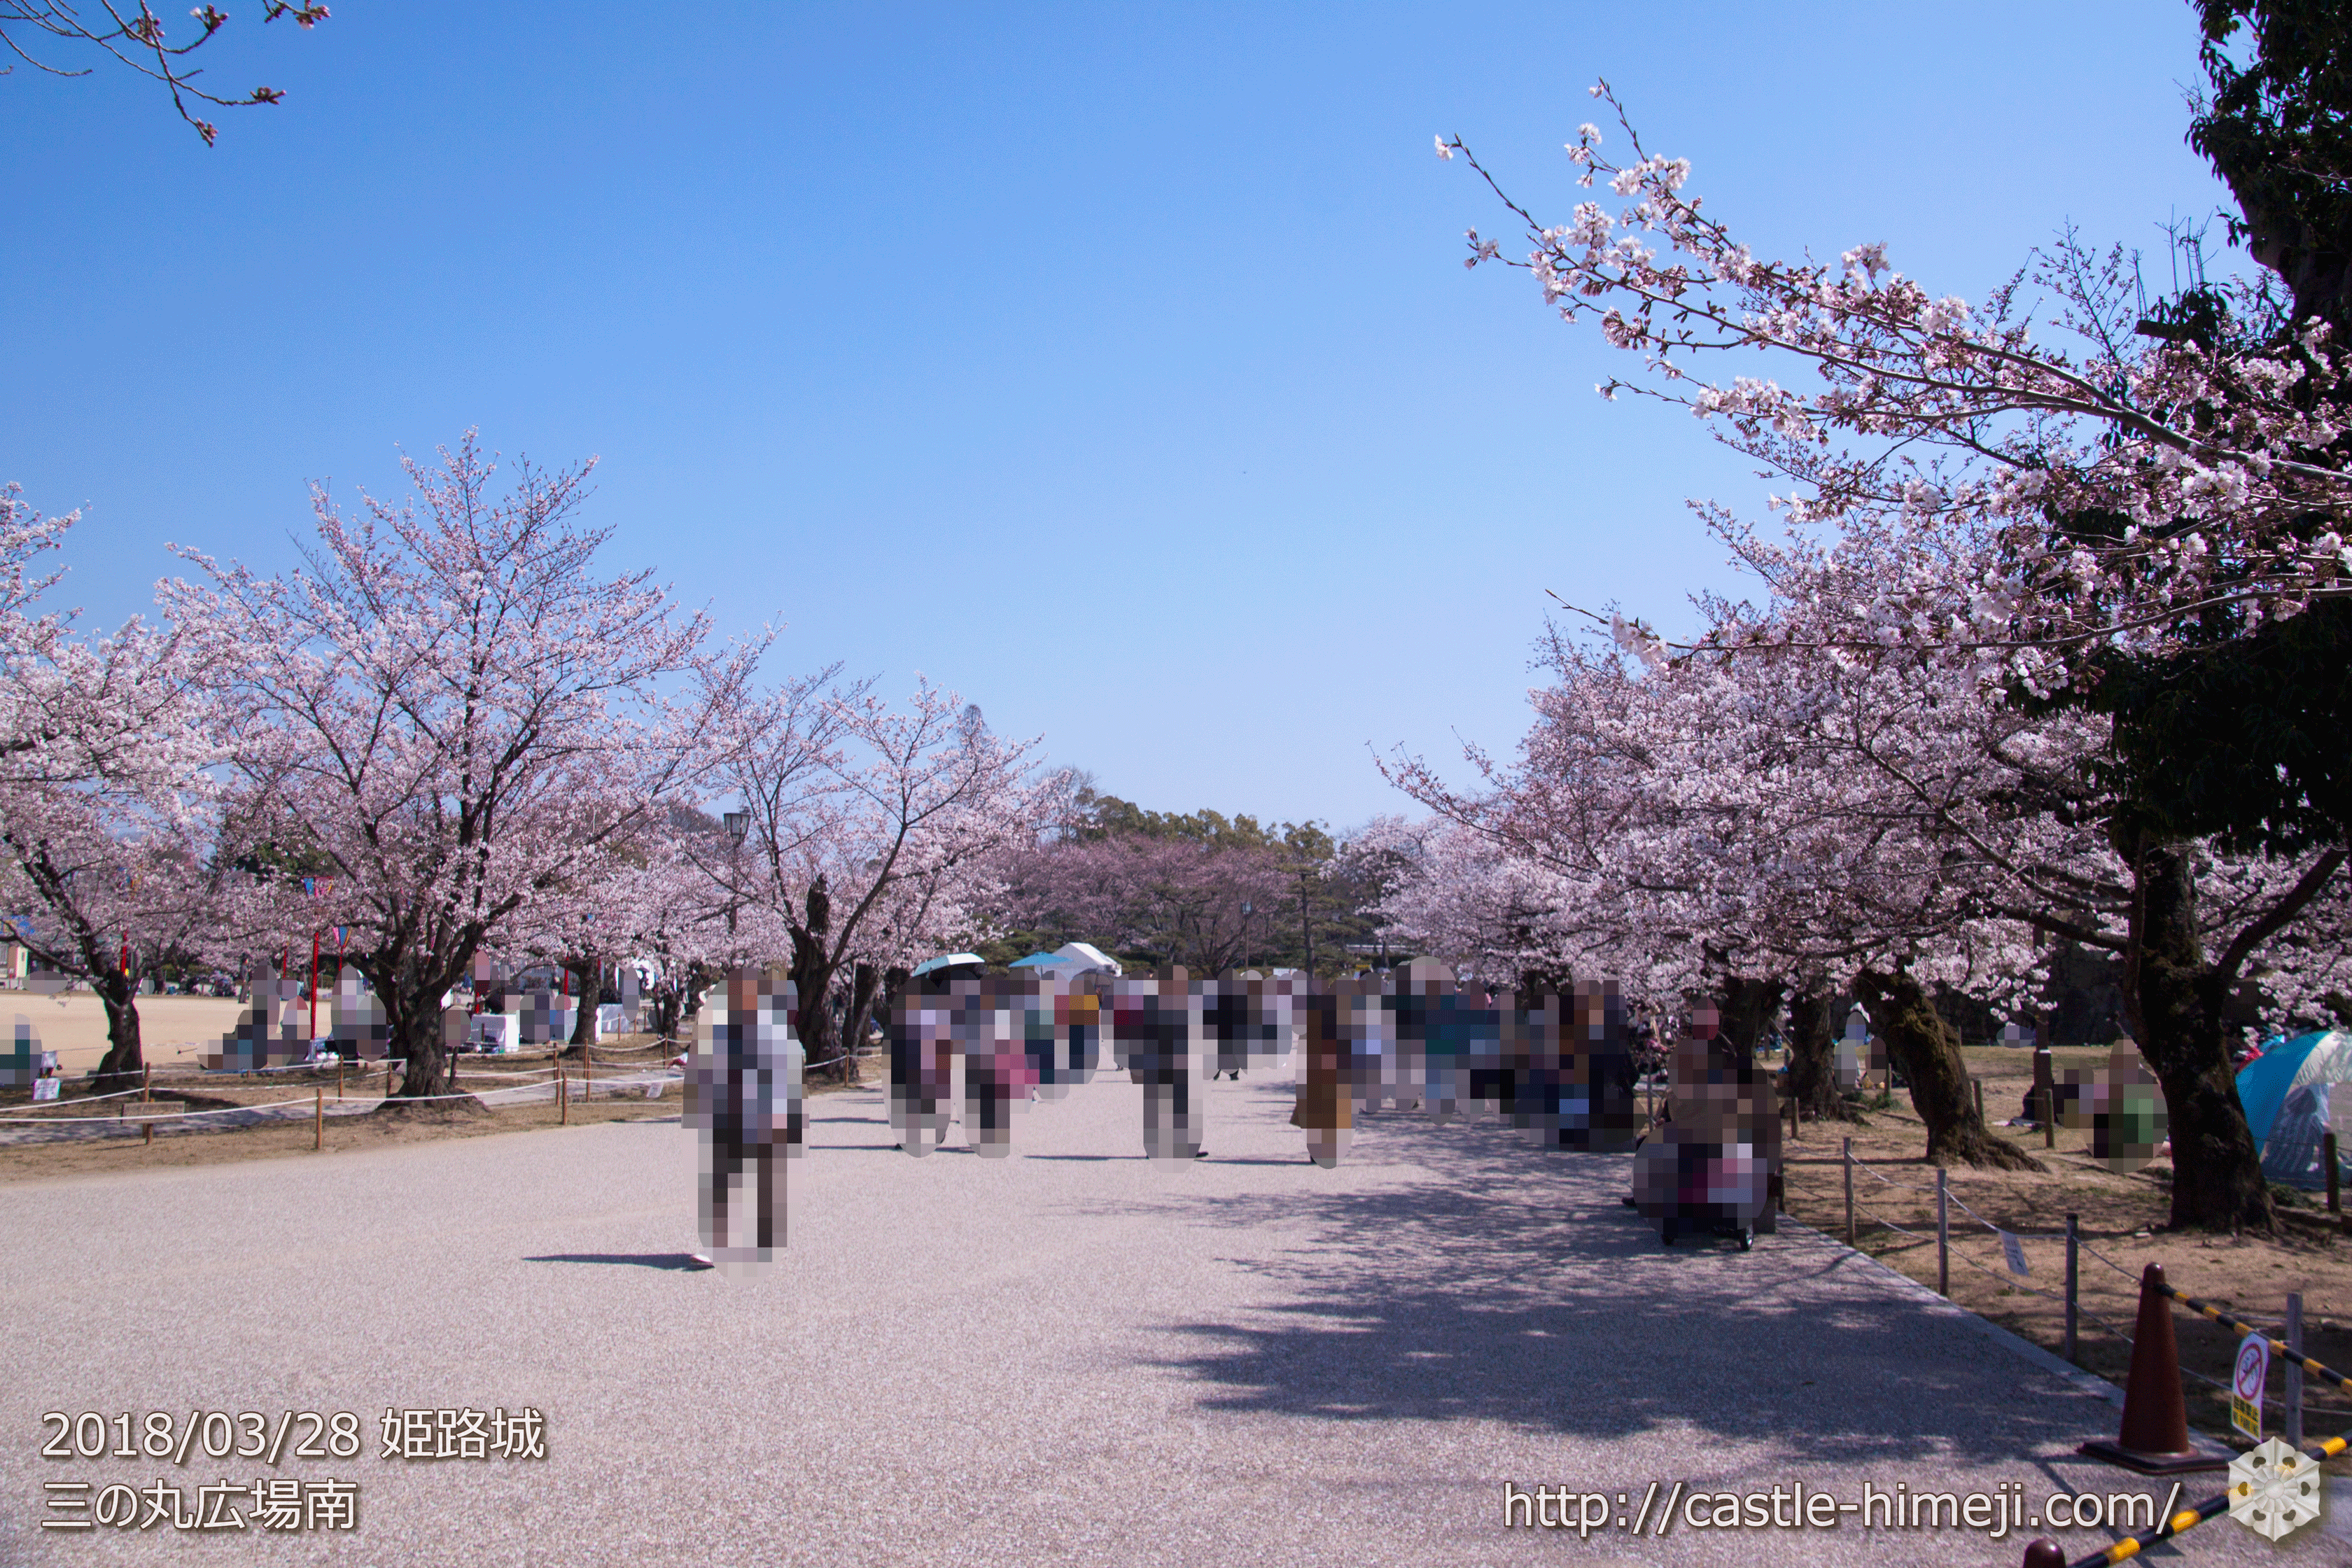 3分 5分咲 姫路市 満開 発表 18 3 28の姫路城の桜速報 開花状況 桜によって5分咲きも 姫路城観光おすすめ 見どころ案内